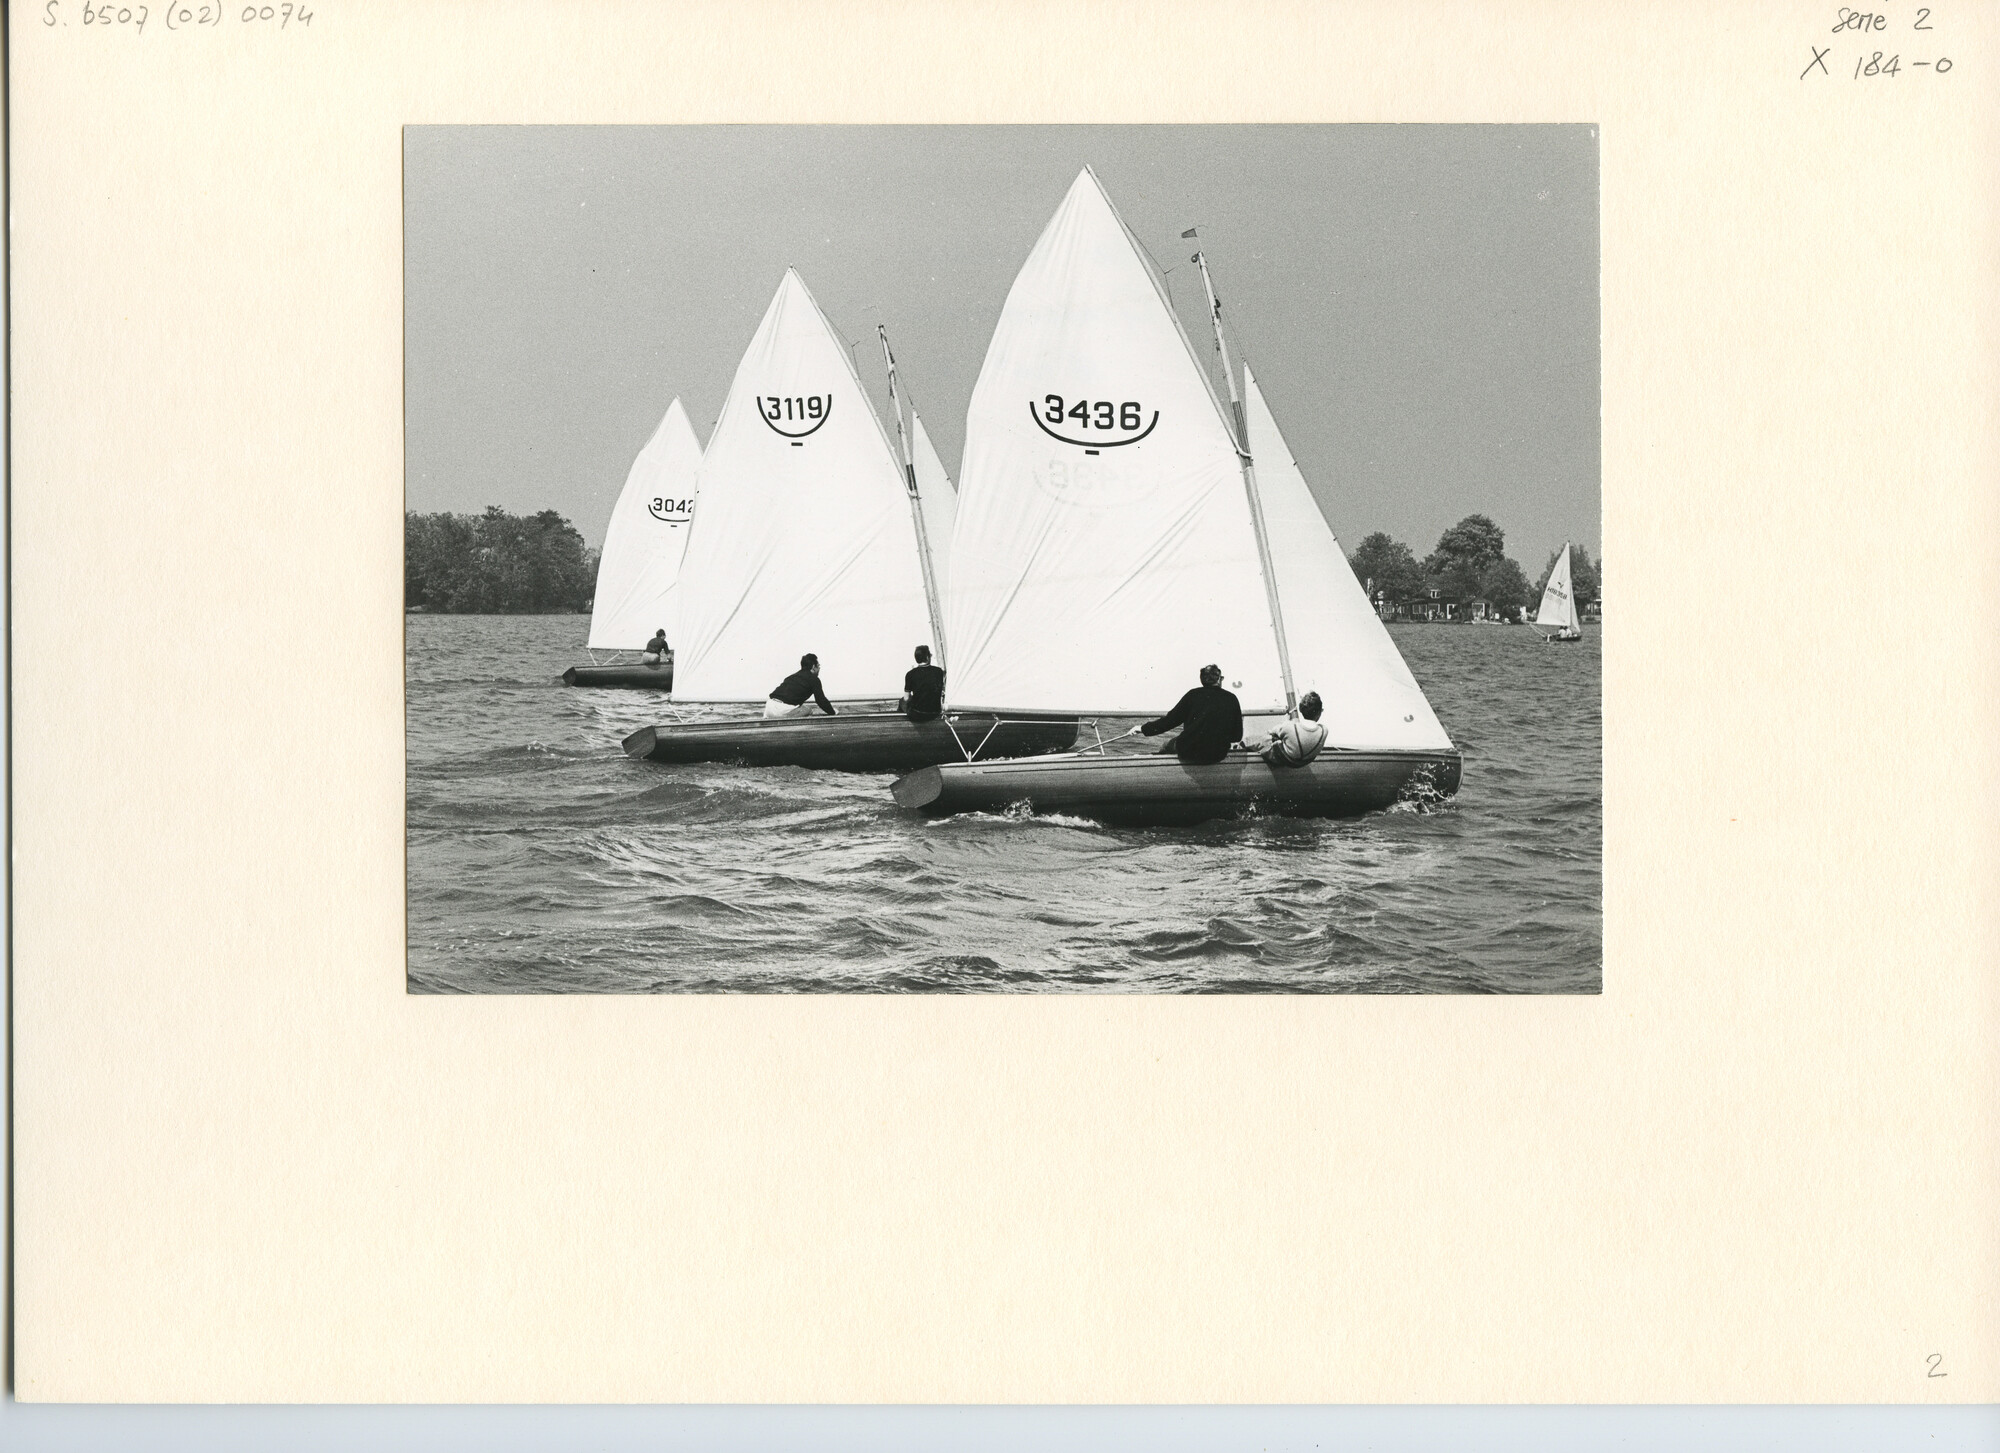 S.6507(02)0074.01; Zwart-wit foto van de 16m² klasse tijdens de Goudse Zeilweek 1969; foto